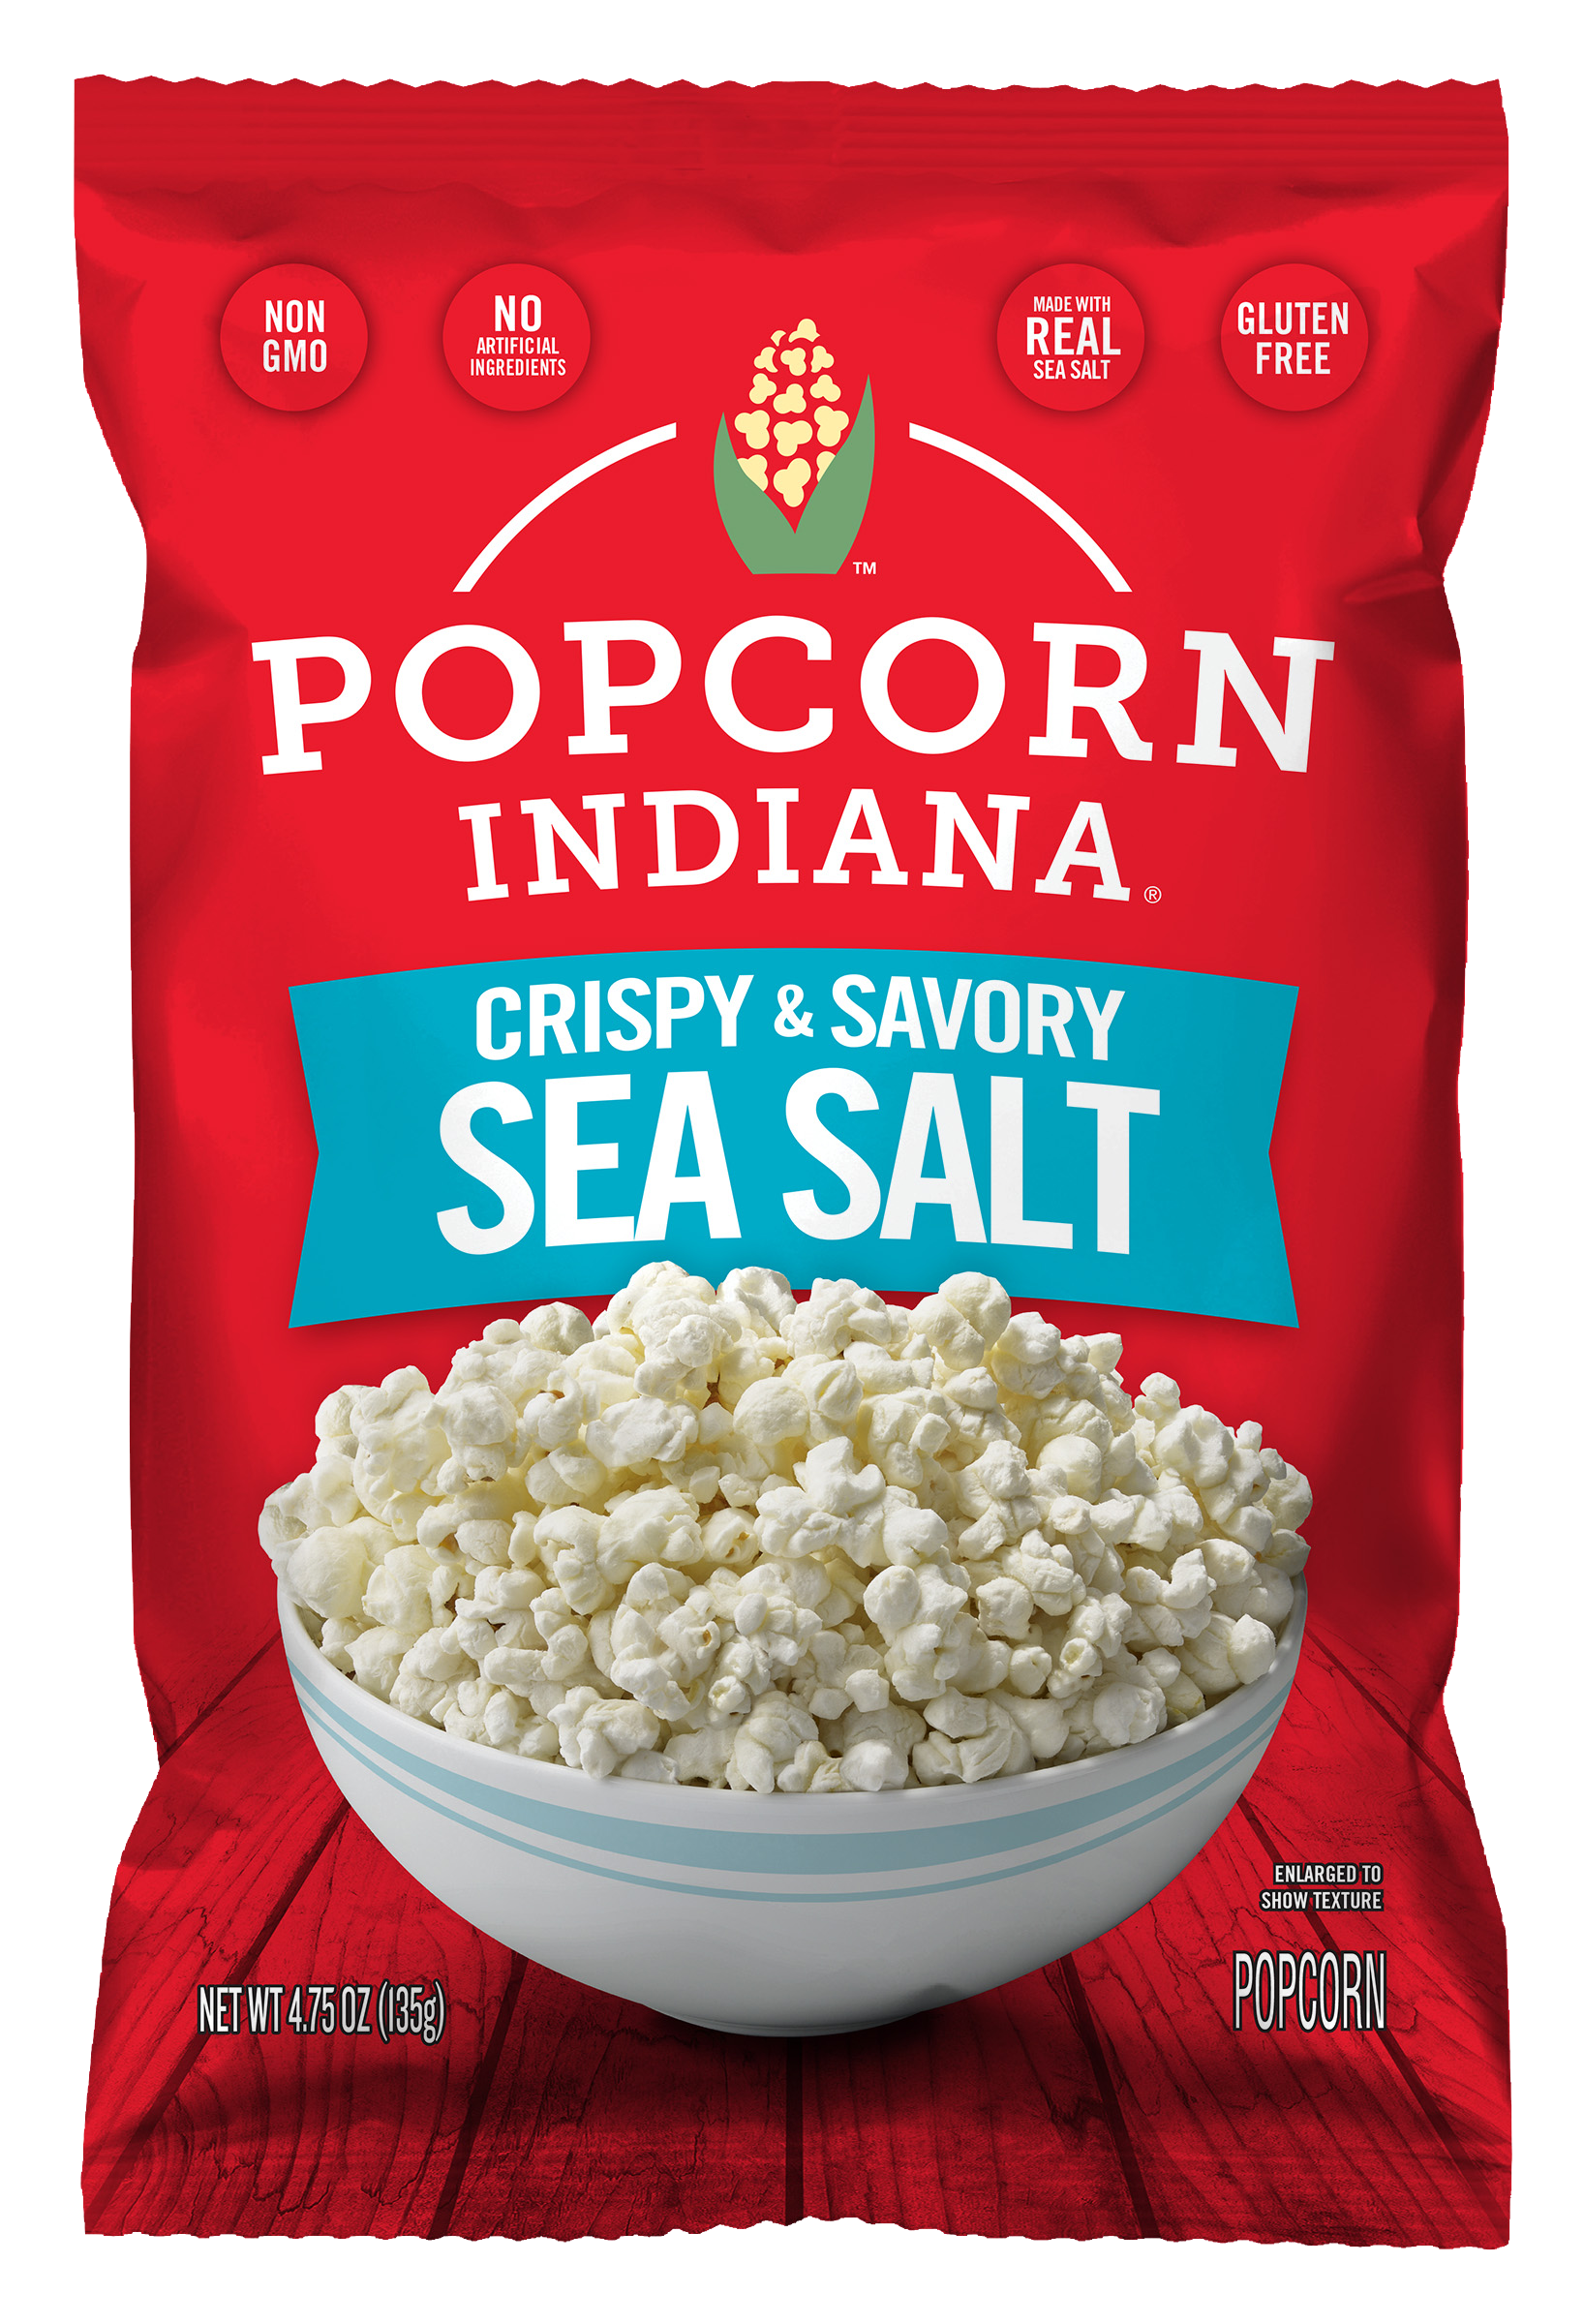 Sea Salt package